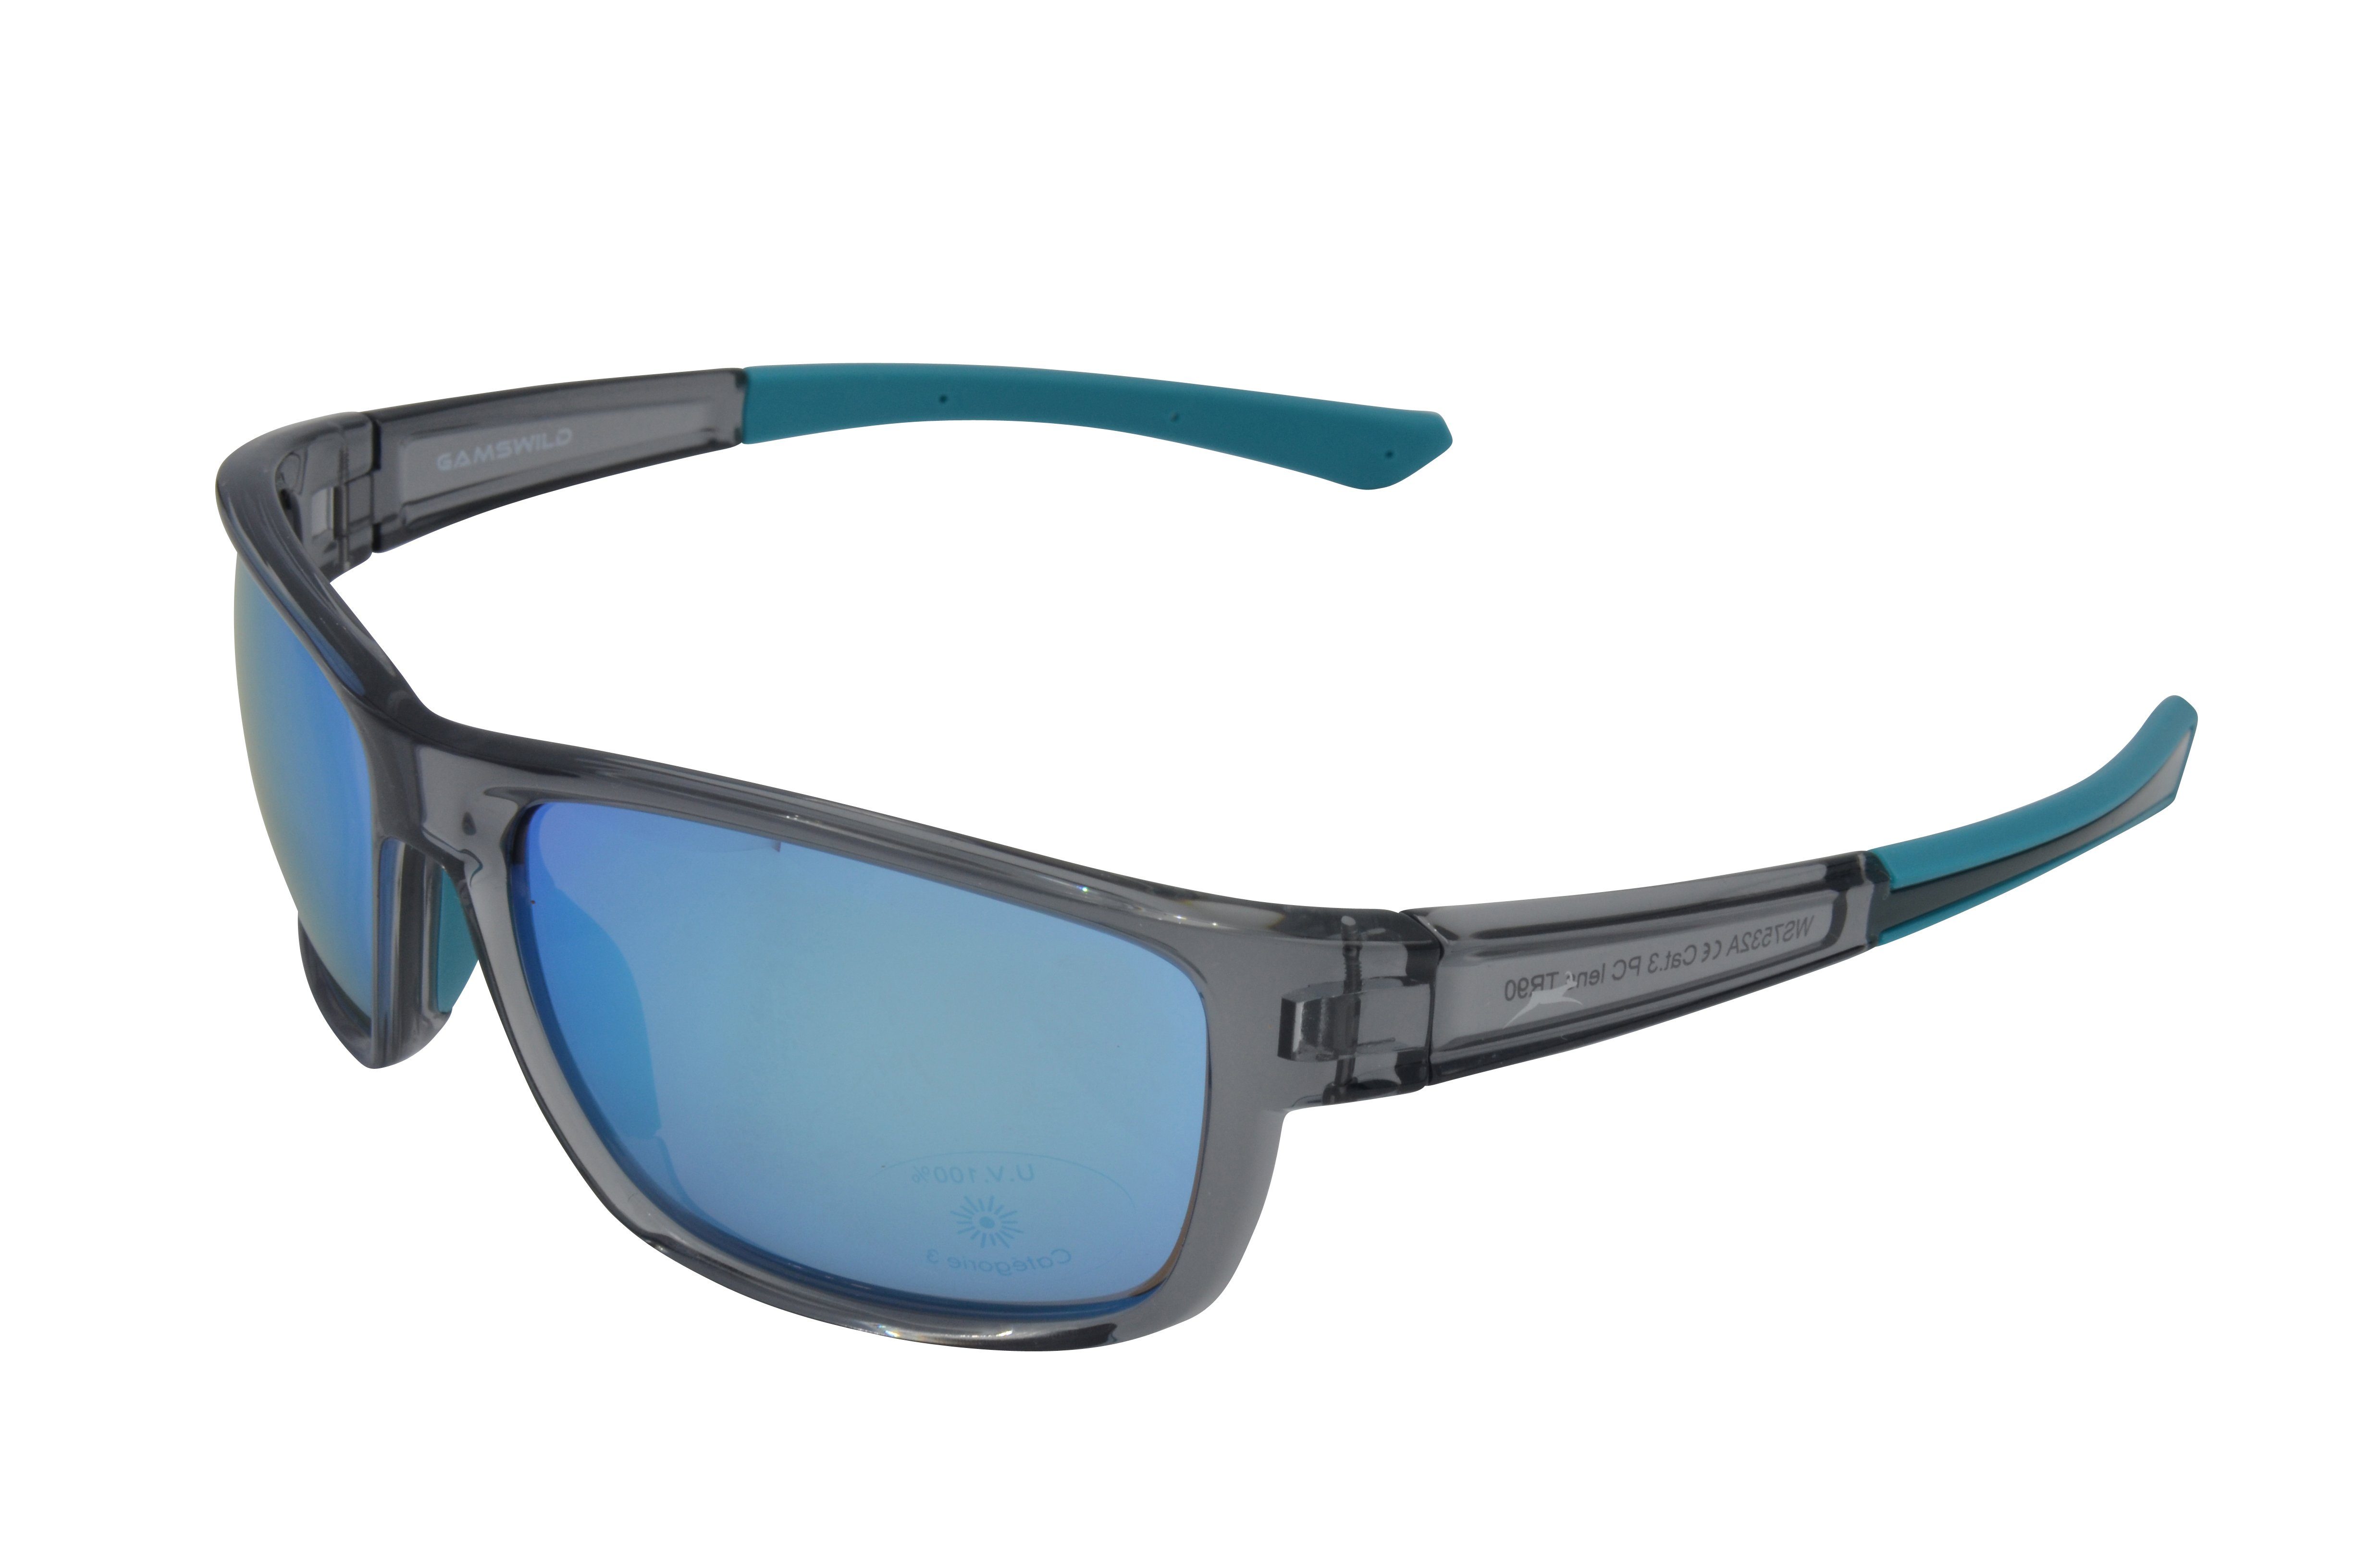 Gamswild Sportbrille WS7532 Sonnenbrille Skibrille Fahrradbrille Damen Herren Unisex TR90, grau-blau, schwarz-violett, schwarz-gold, schmal geschnittene Passform grau_blau